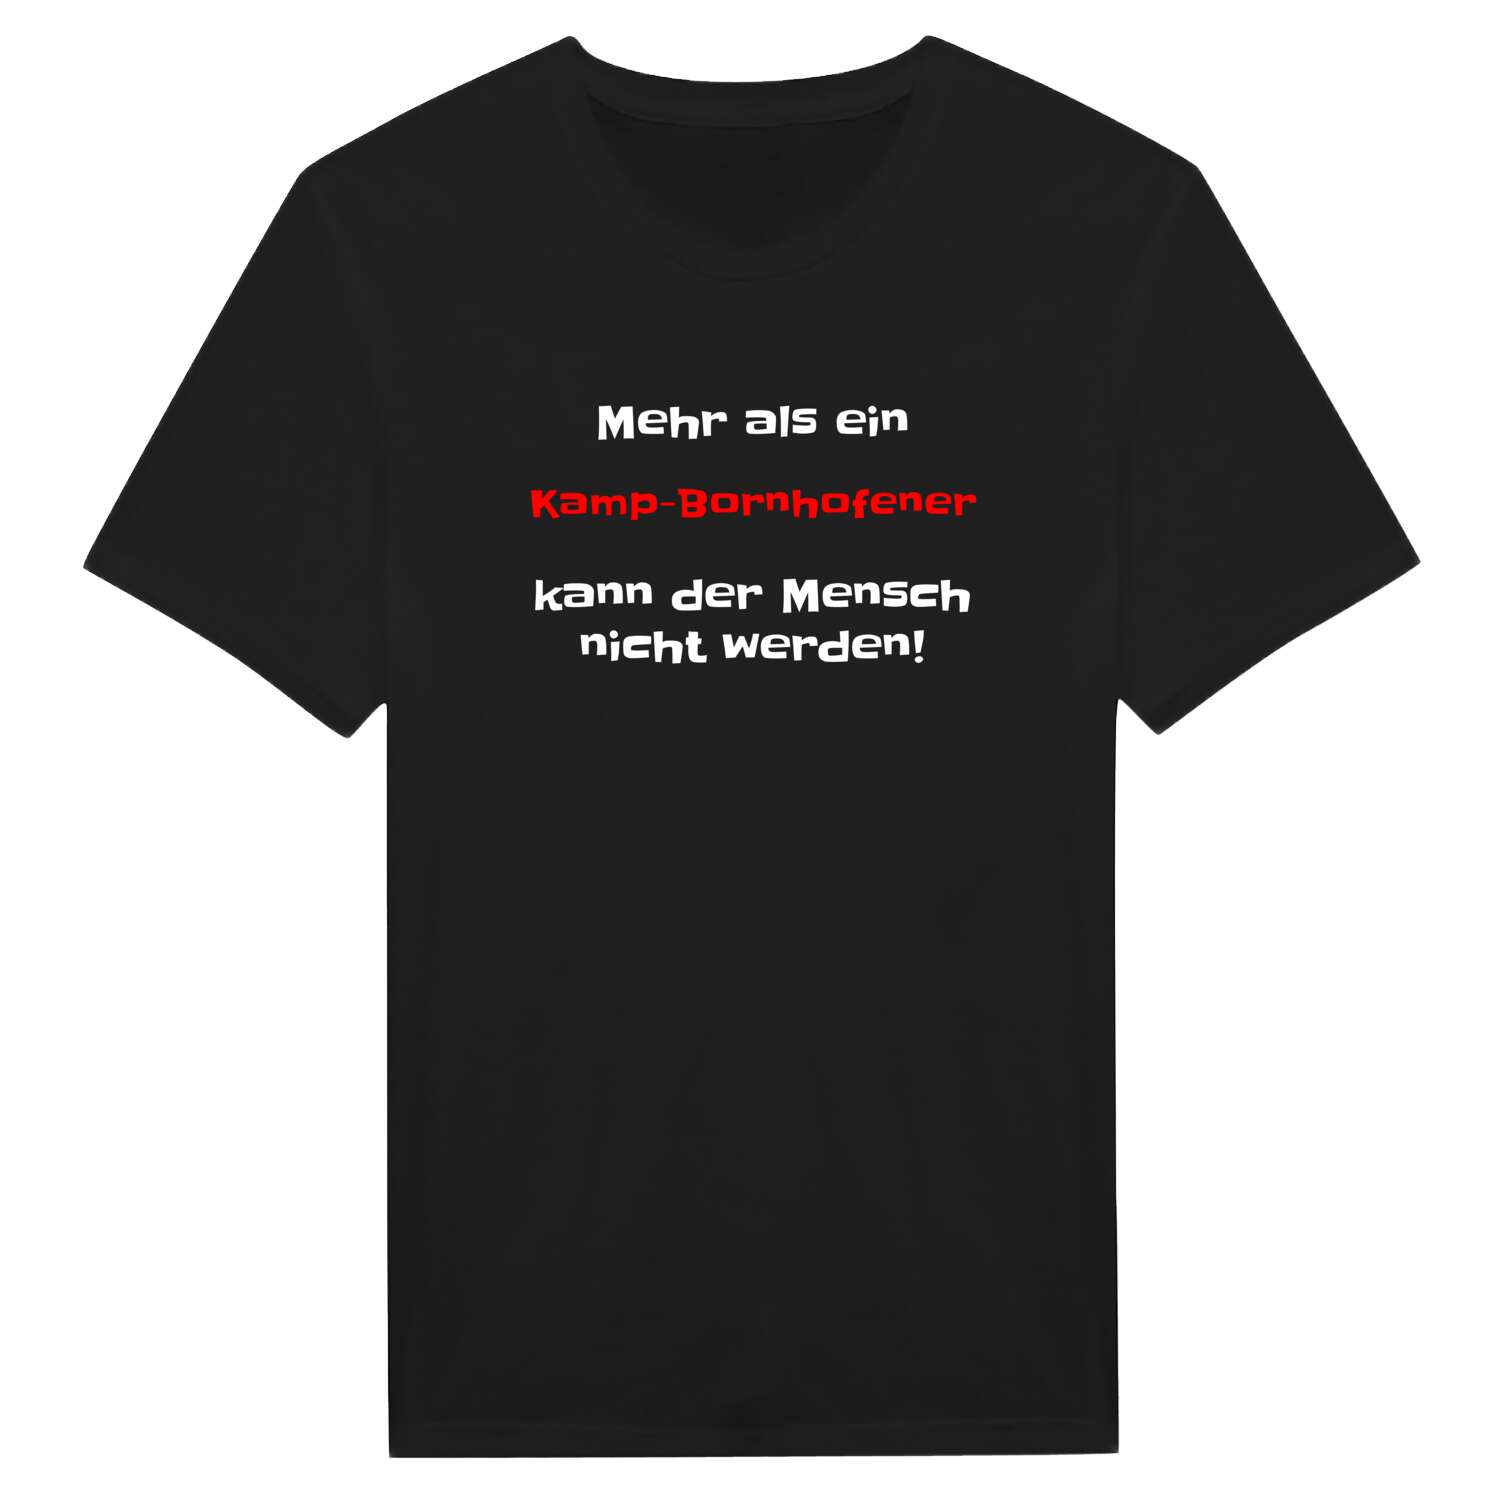 Kamp-Bornhofen T-Shirt »Mehr als ein«